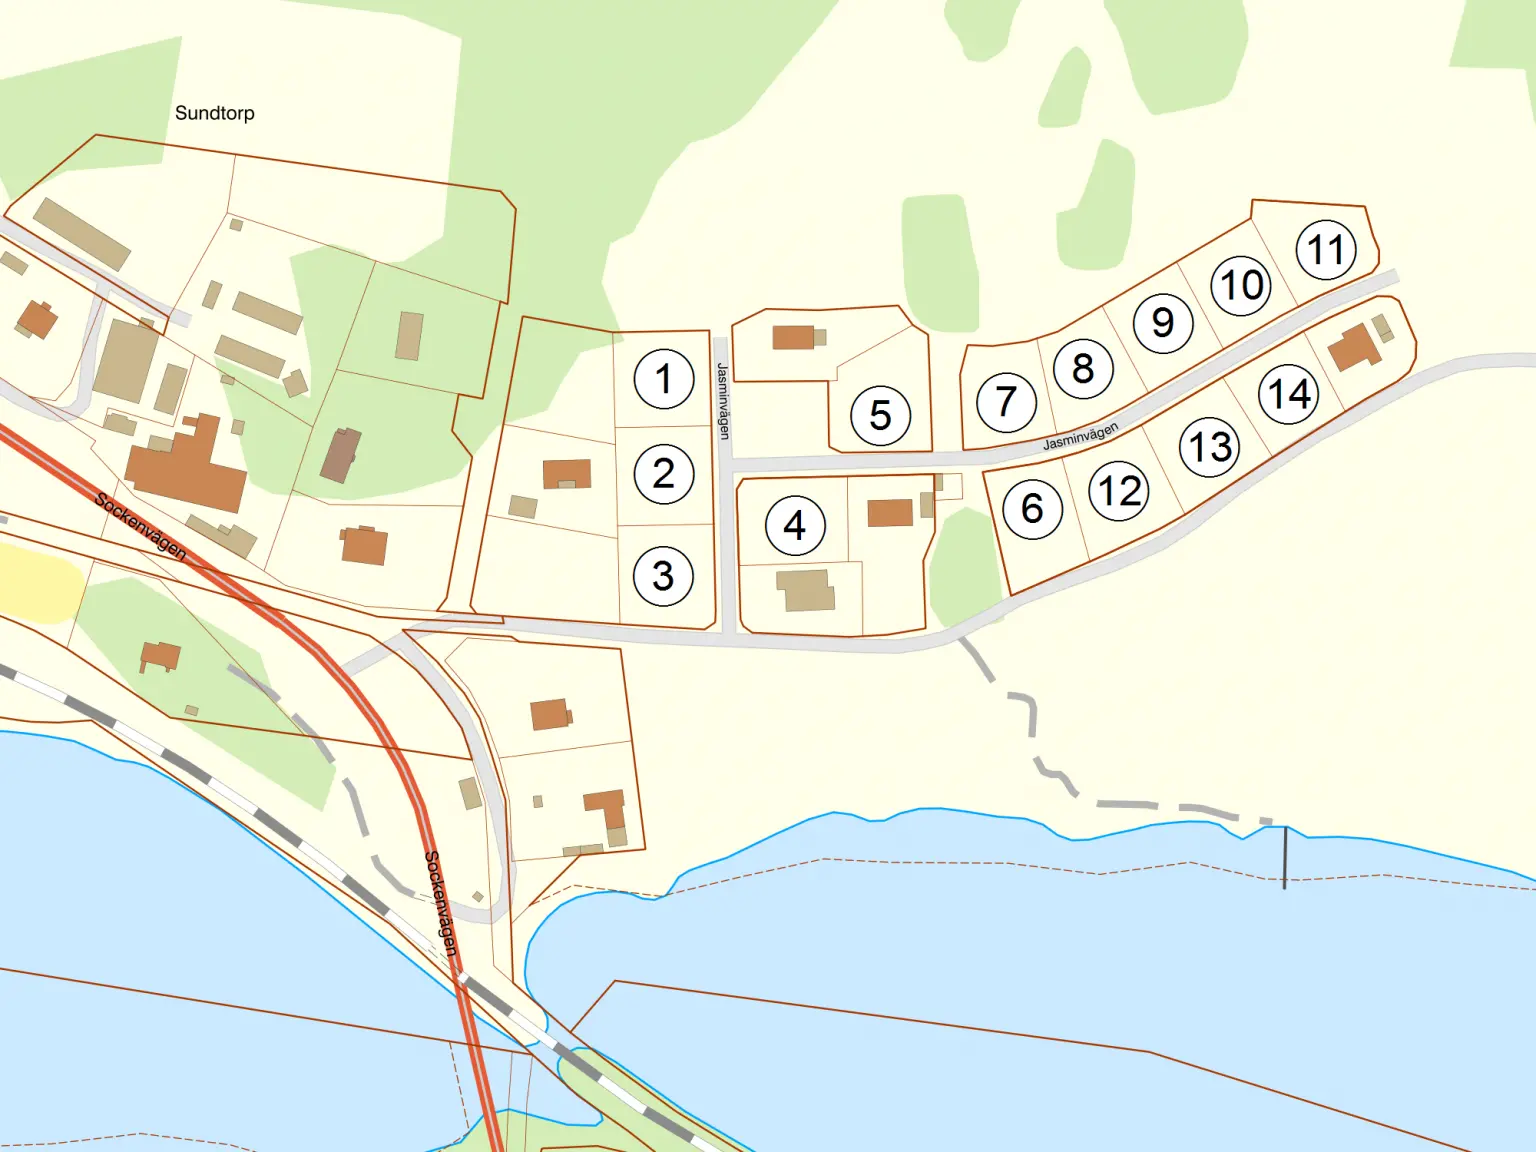 Karta över lediga hustomter i Mellösa